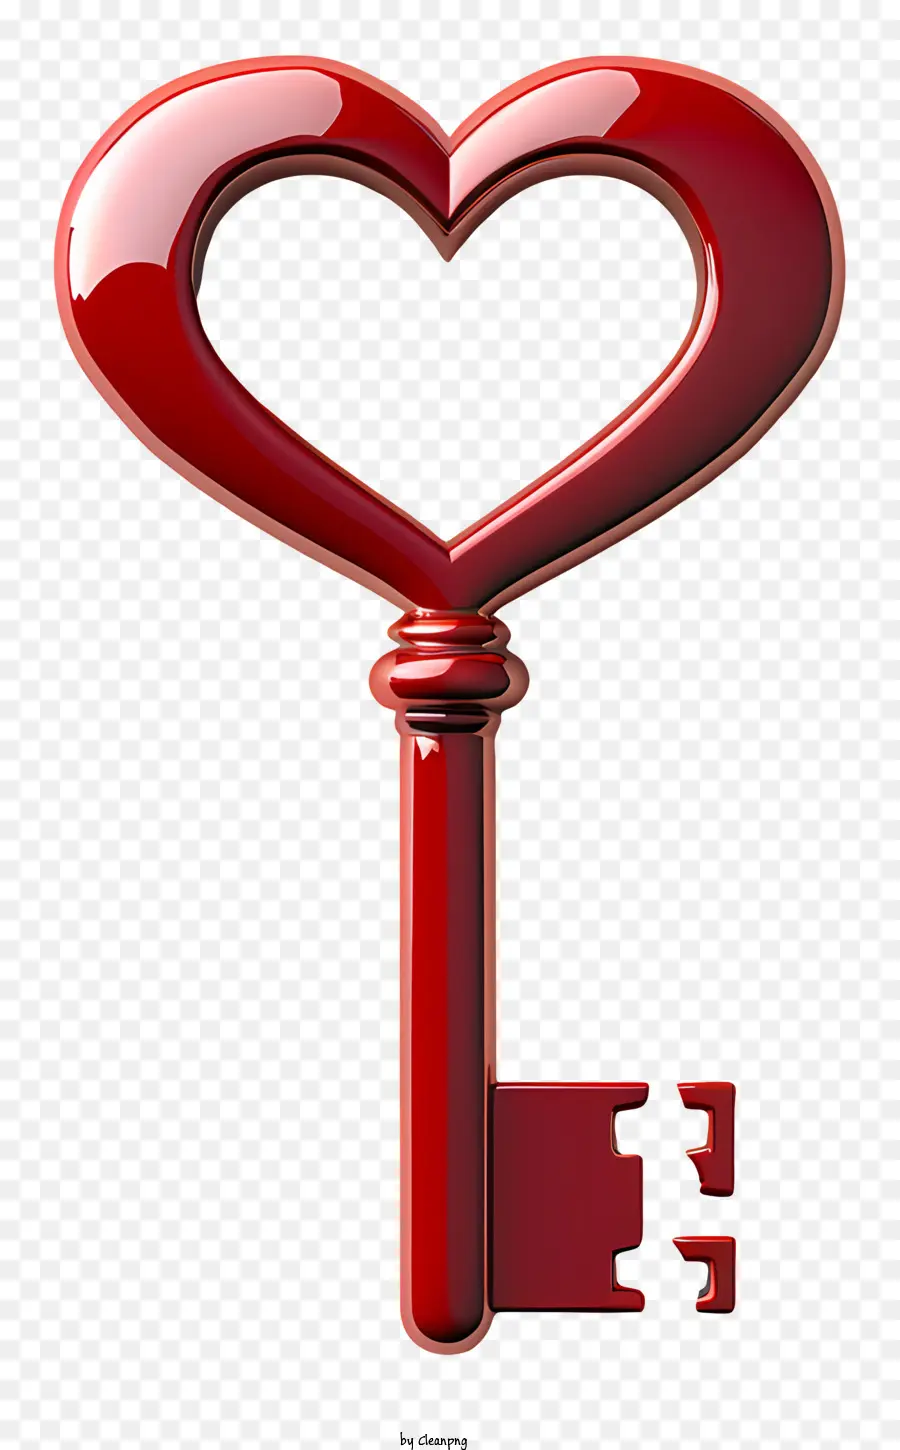 Valentinstag Key Heart-formte Key Red Plastikschlüssel Silber Herz glänzender Schlüssel - Glänzender herzförmiger Schlüssel mit verstecktem Schlüsselloch